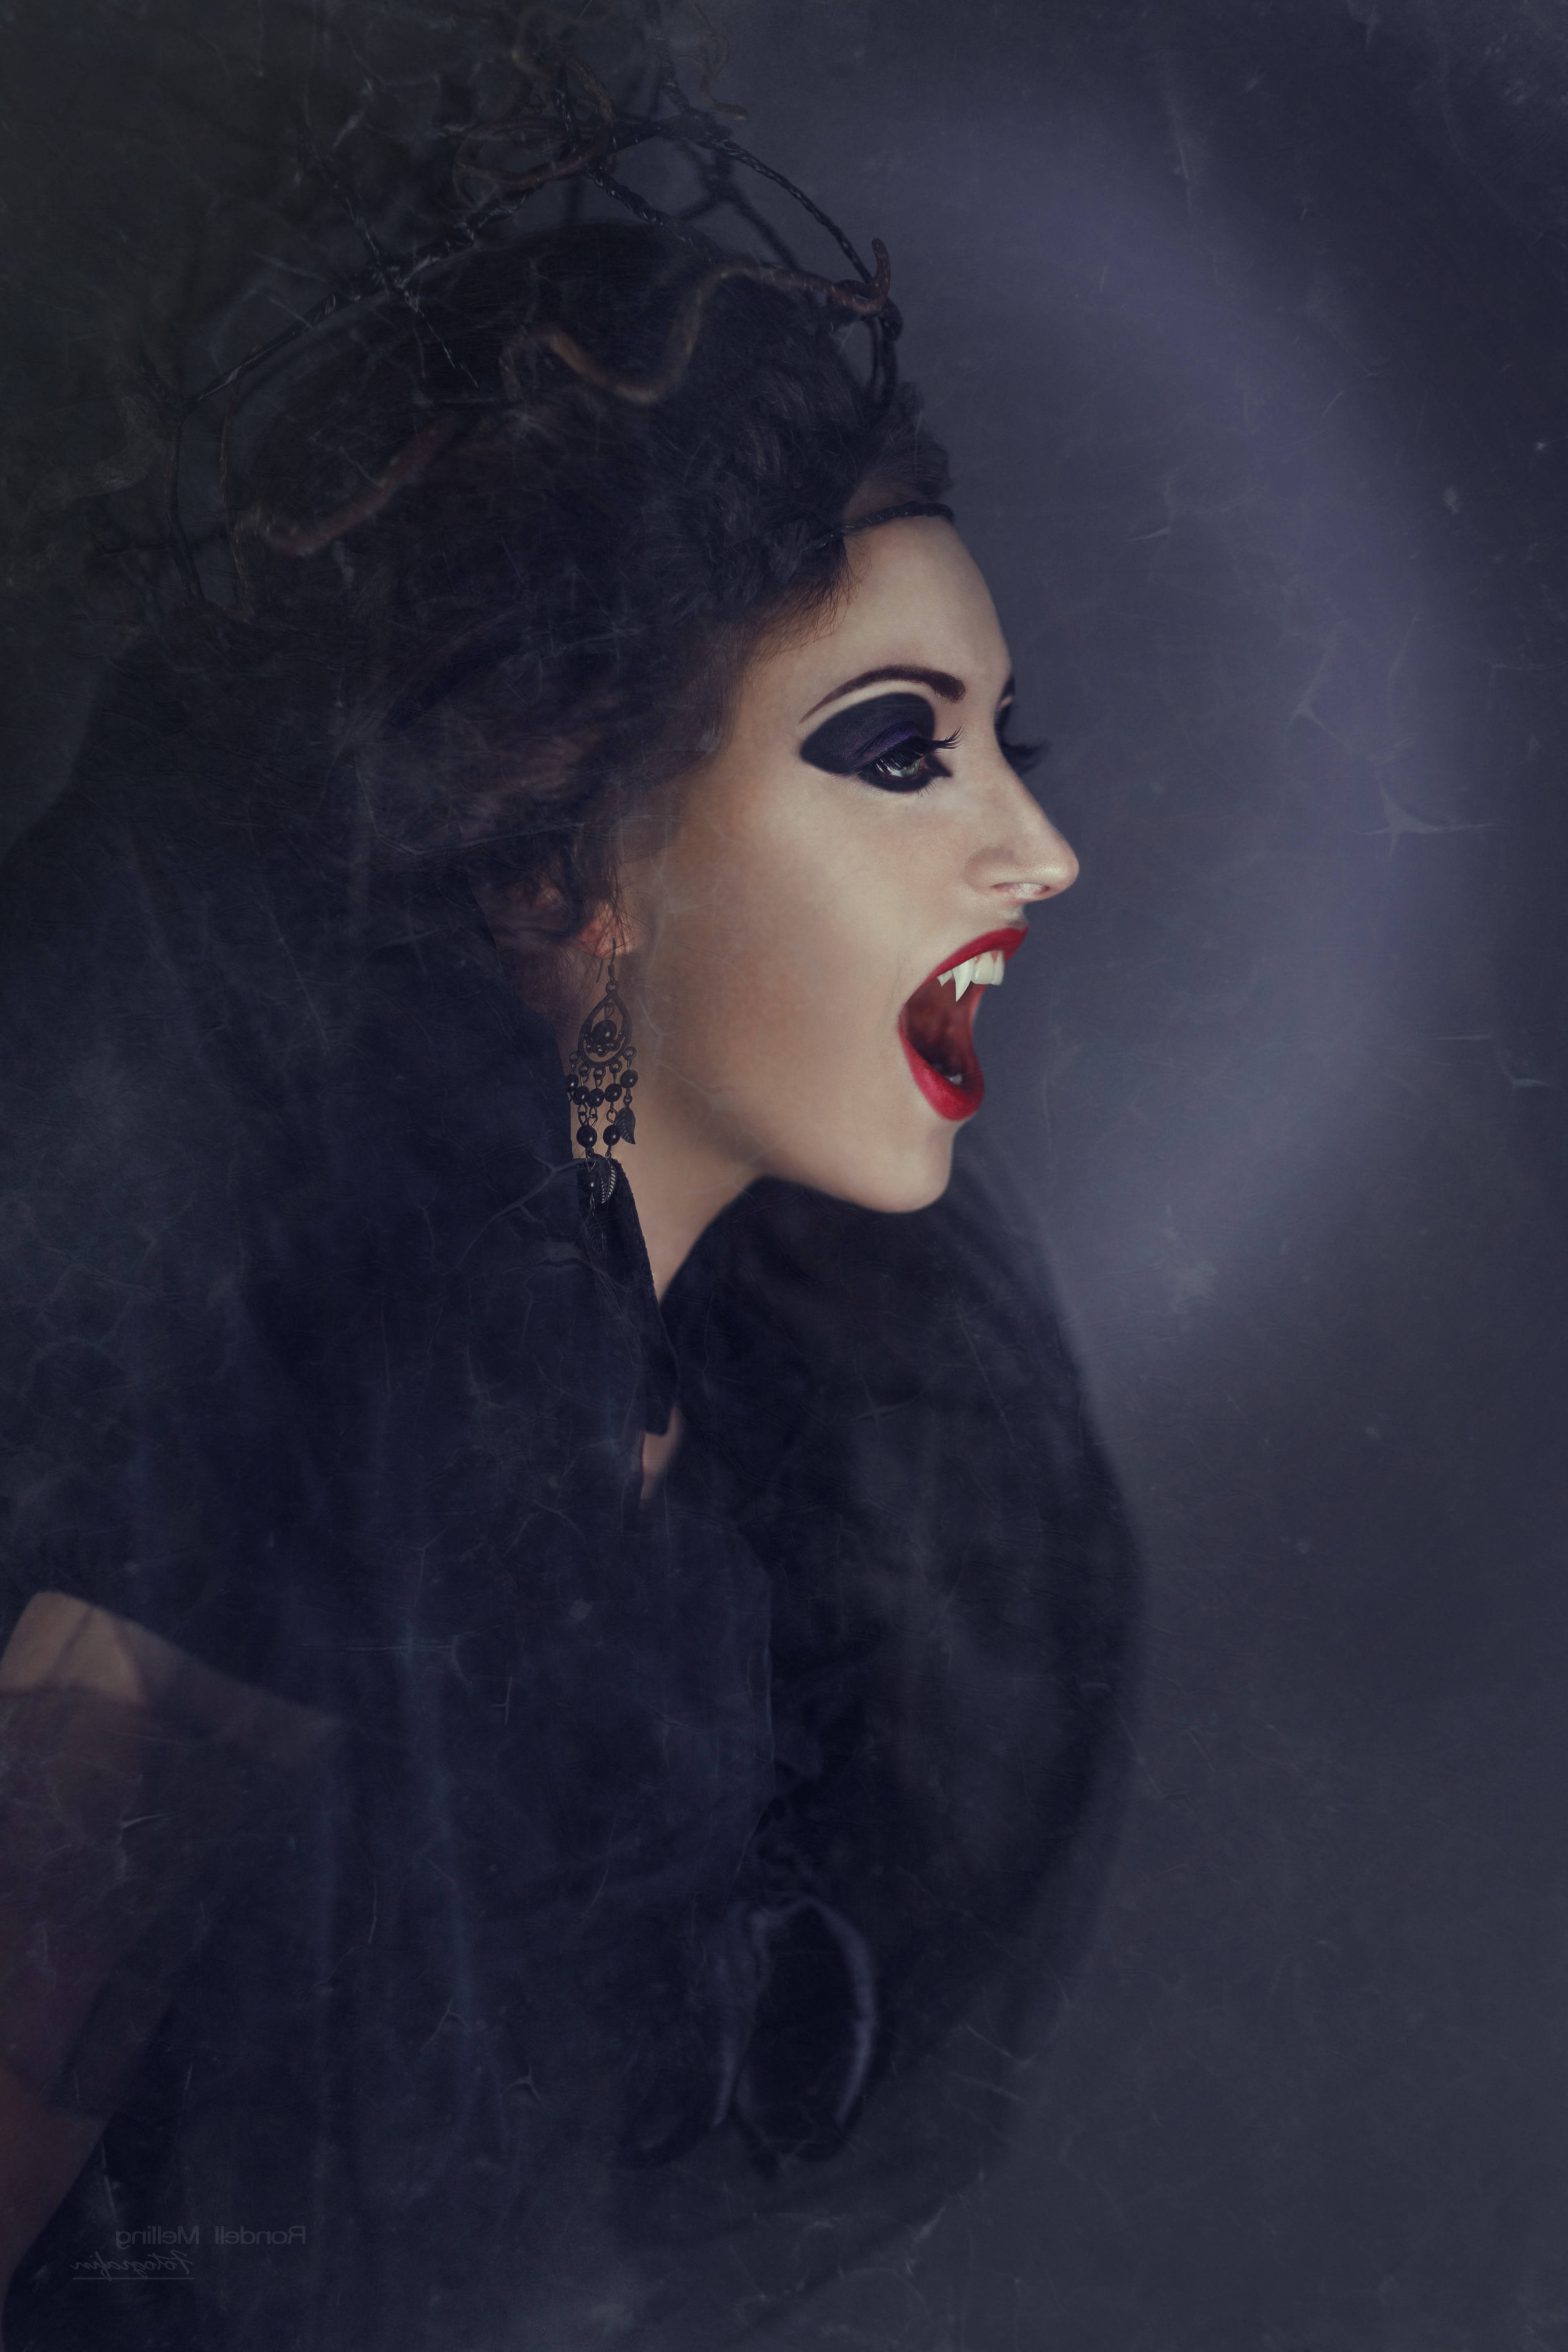 Vampiros: La verdad detrás del mito